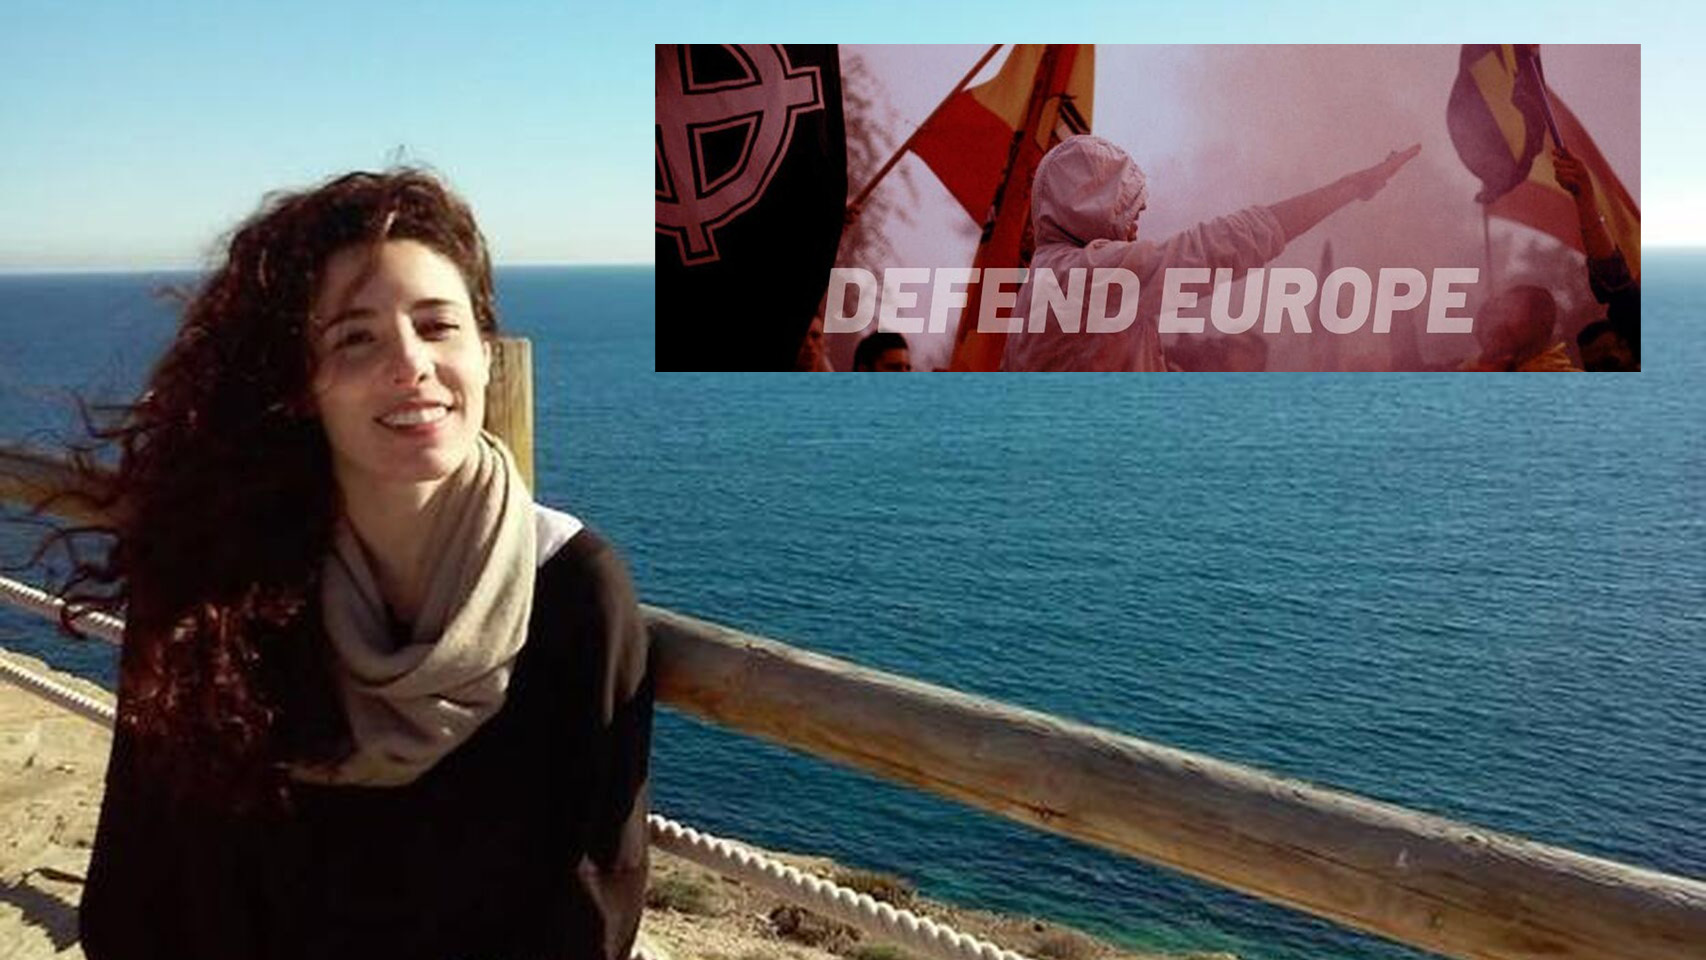 Rocío de Meer, diputada de Vox por Almería, junto a la imagen que utiliza el grupo neonazi Amenece Europa.